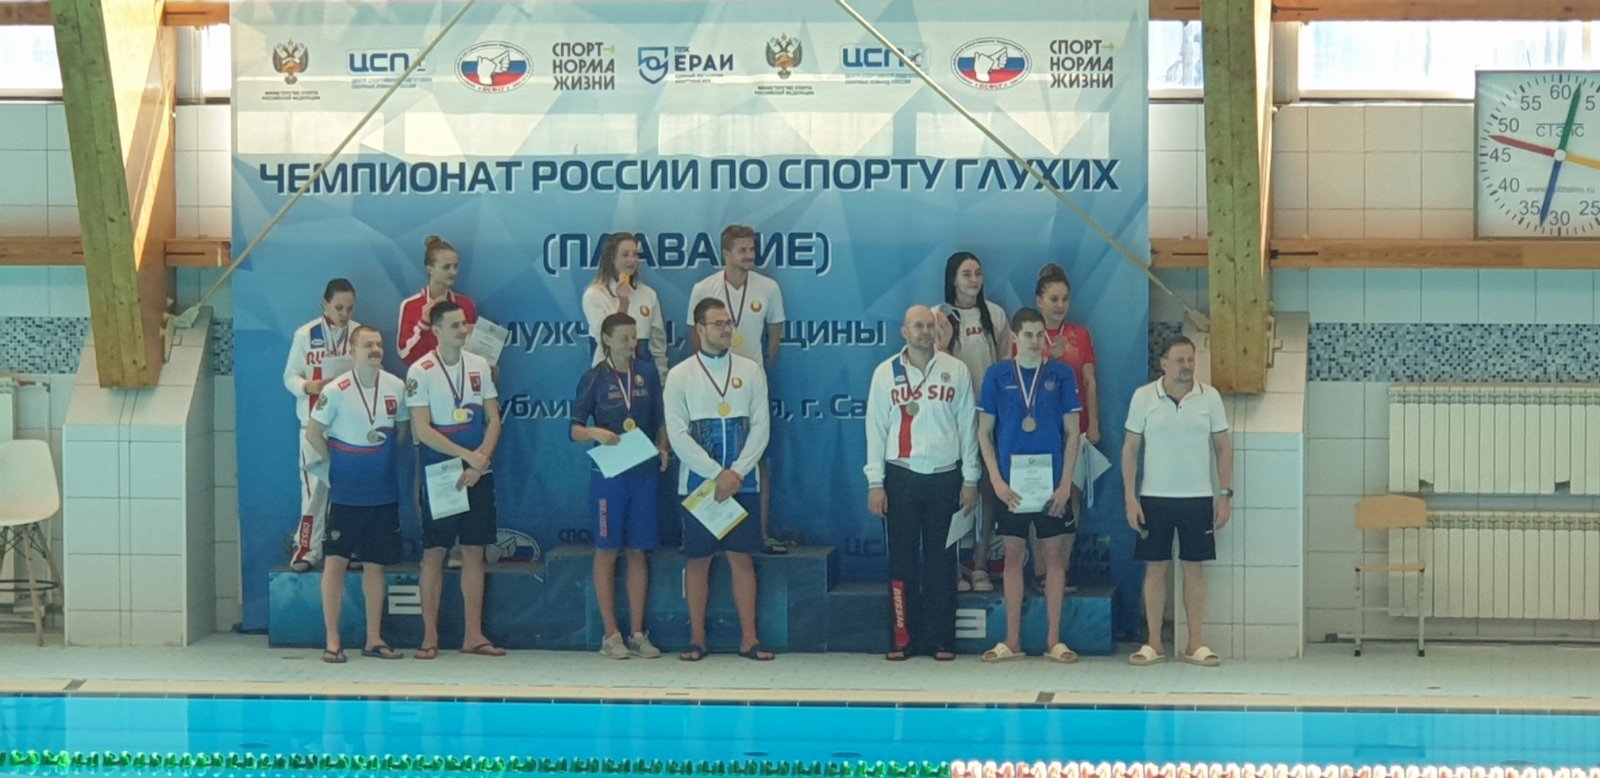 Итоги четырех дней чемпионата России по спорту глухих (плавание) в г. Саранск